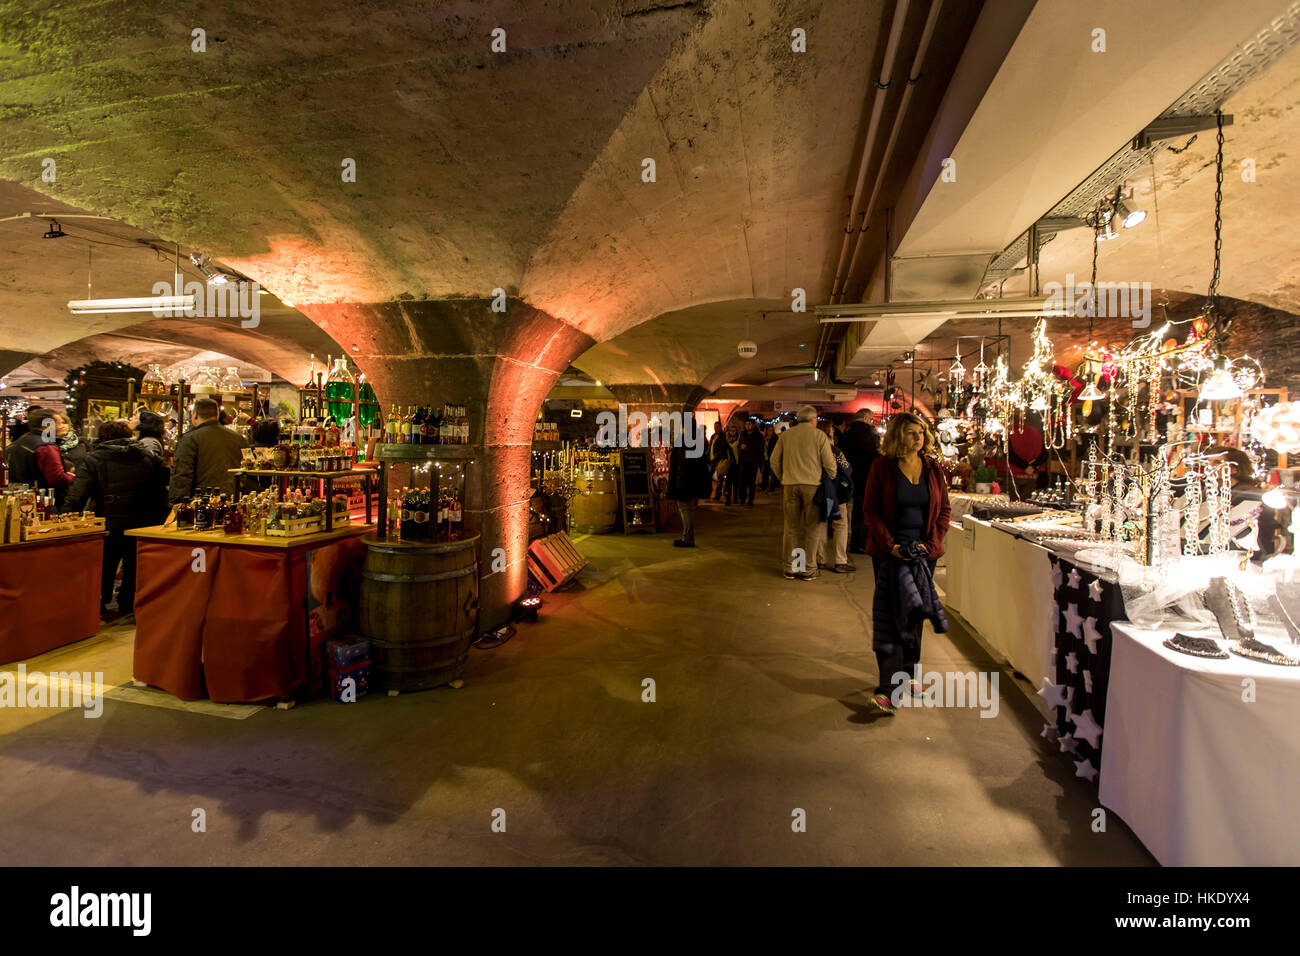 Unterirdische Weihnachtsmarkt, Weihnachtsmarkt in alter Wein vault in Traben-Trarbach an der Mosel, hier die Keller der Moselschlosschen, Deutschland Stockfoto